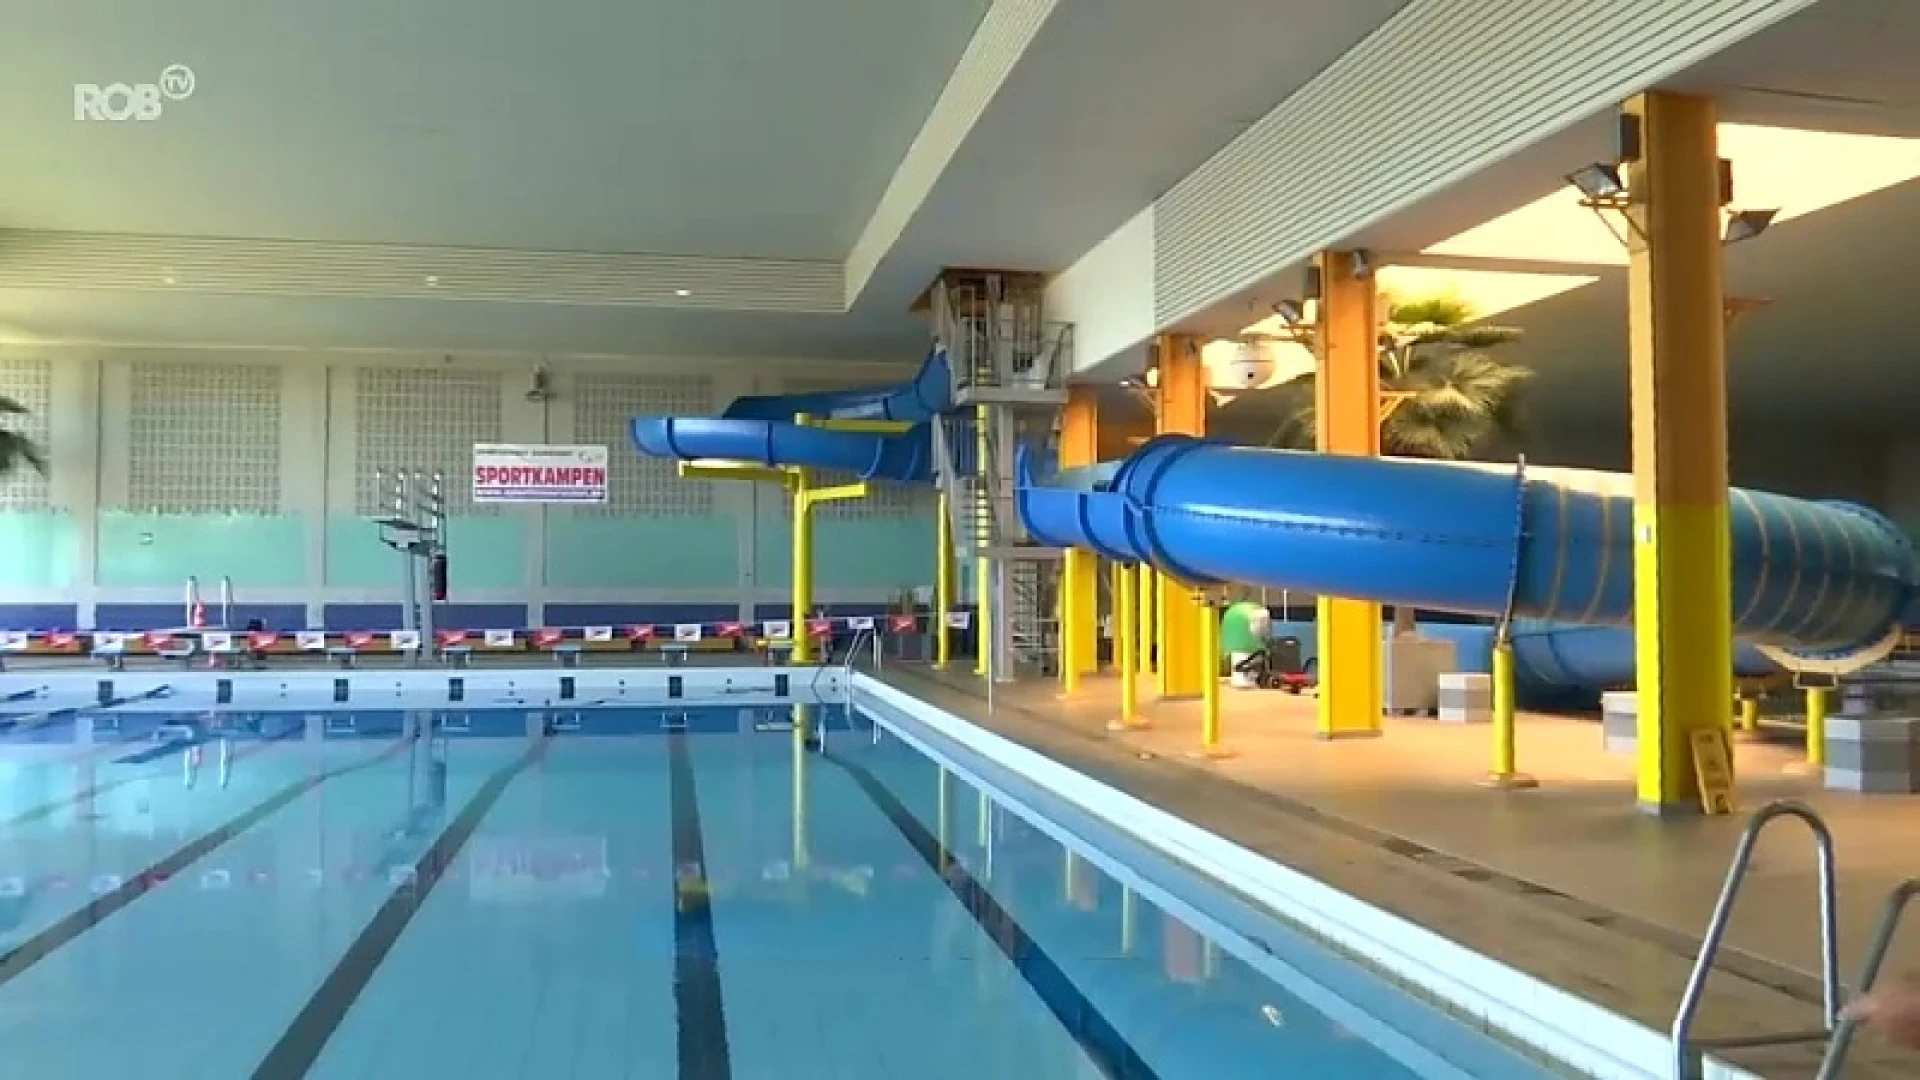 Zwembad Aarschot klaar voor heropening: reservaties lopen vlot binnen